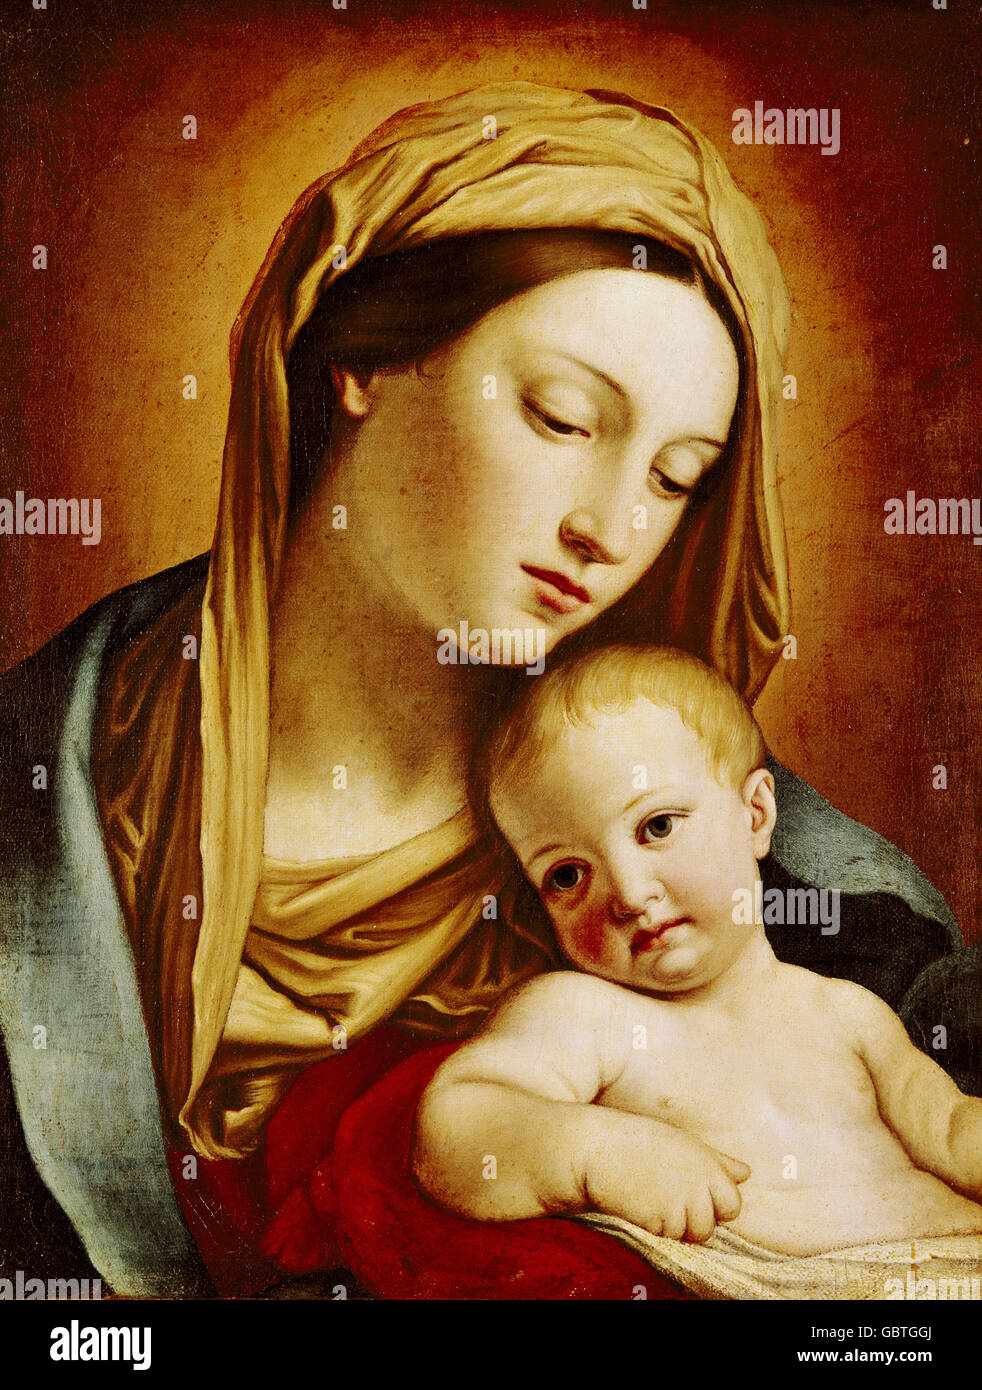 Bellas artes, Il Sassoferrato, (1609 - 1685), pintura 'Madonna' y el niño, la segunda mitad del siglo xvii, Pommersfelden, Foto de stock